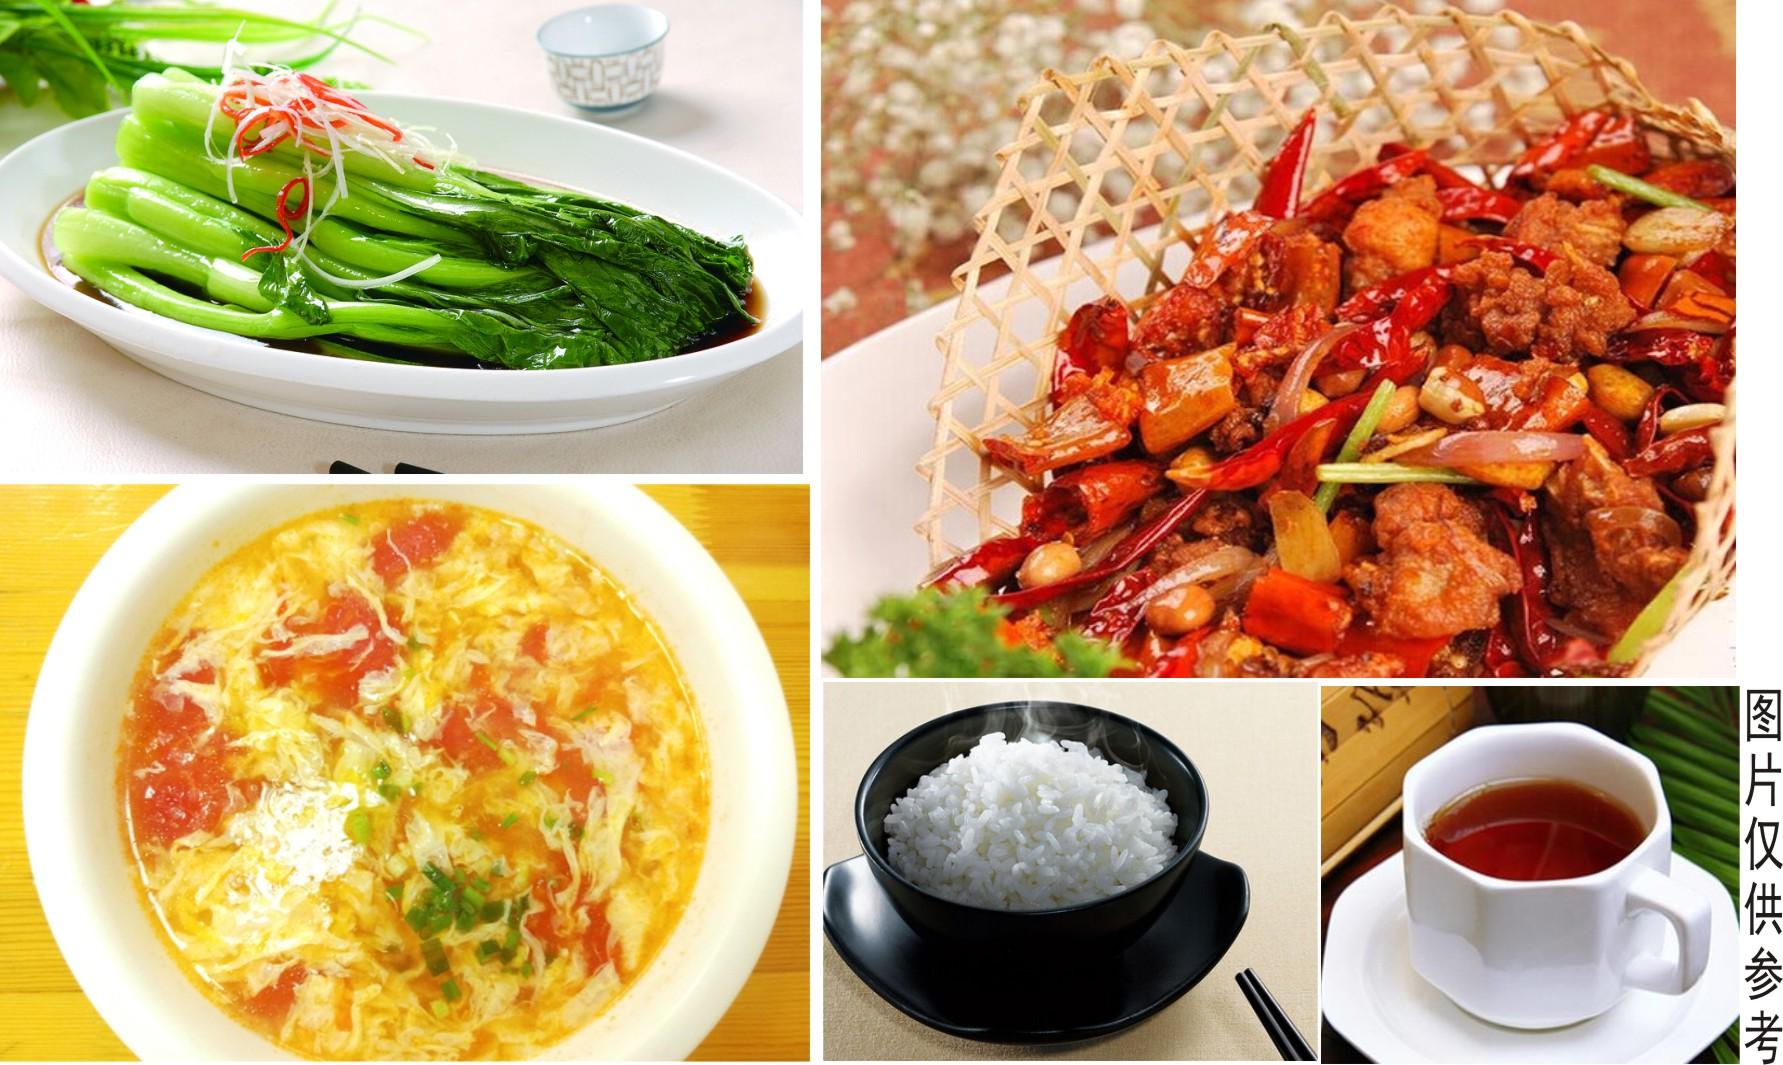 扶风县举办“一桌特色美食（宴席）”评选活动-西部之声